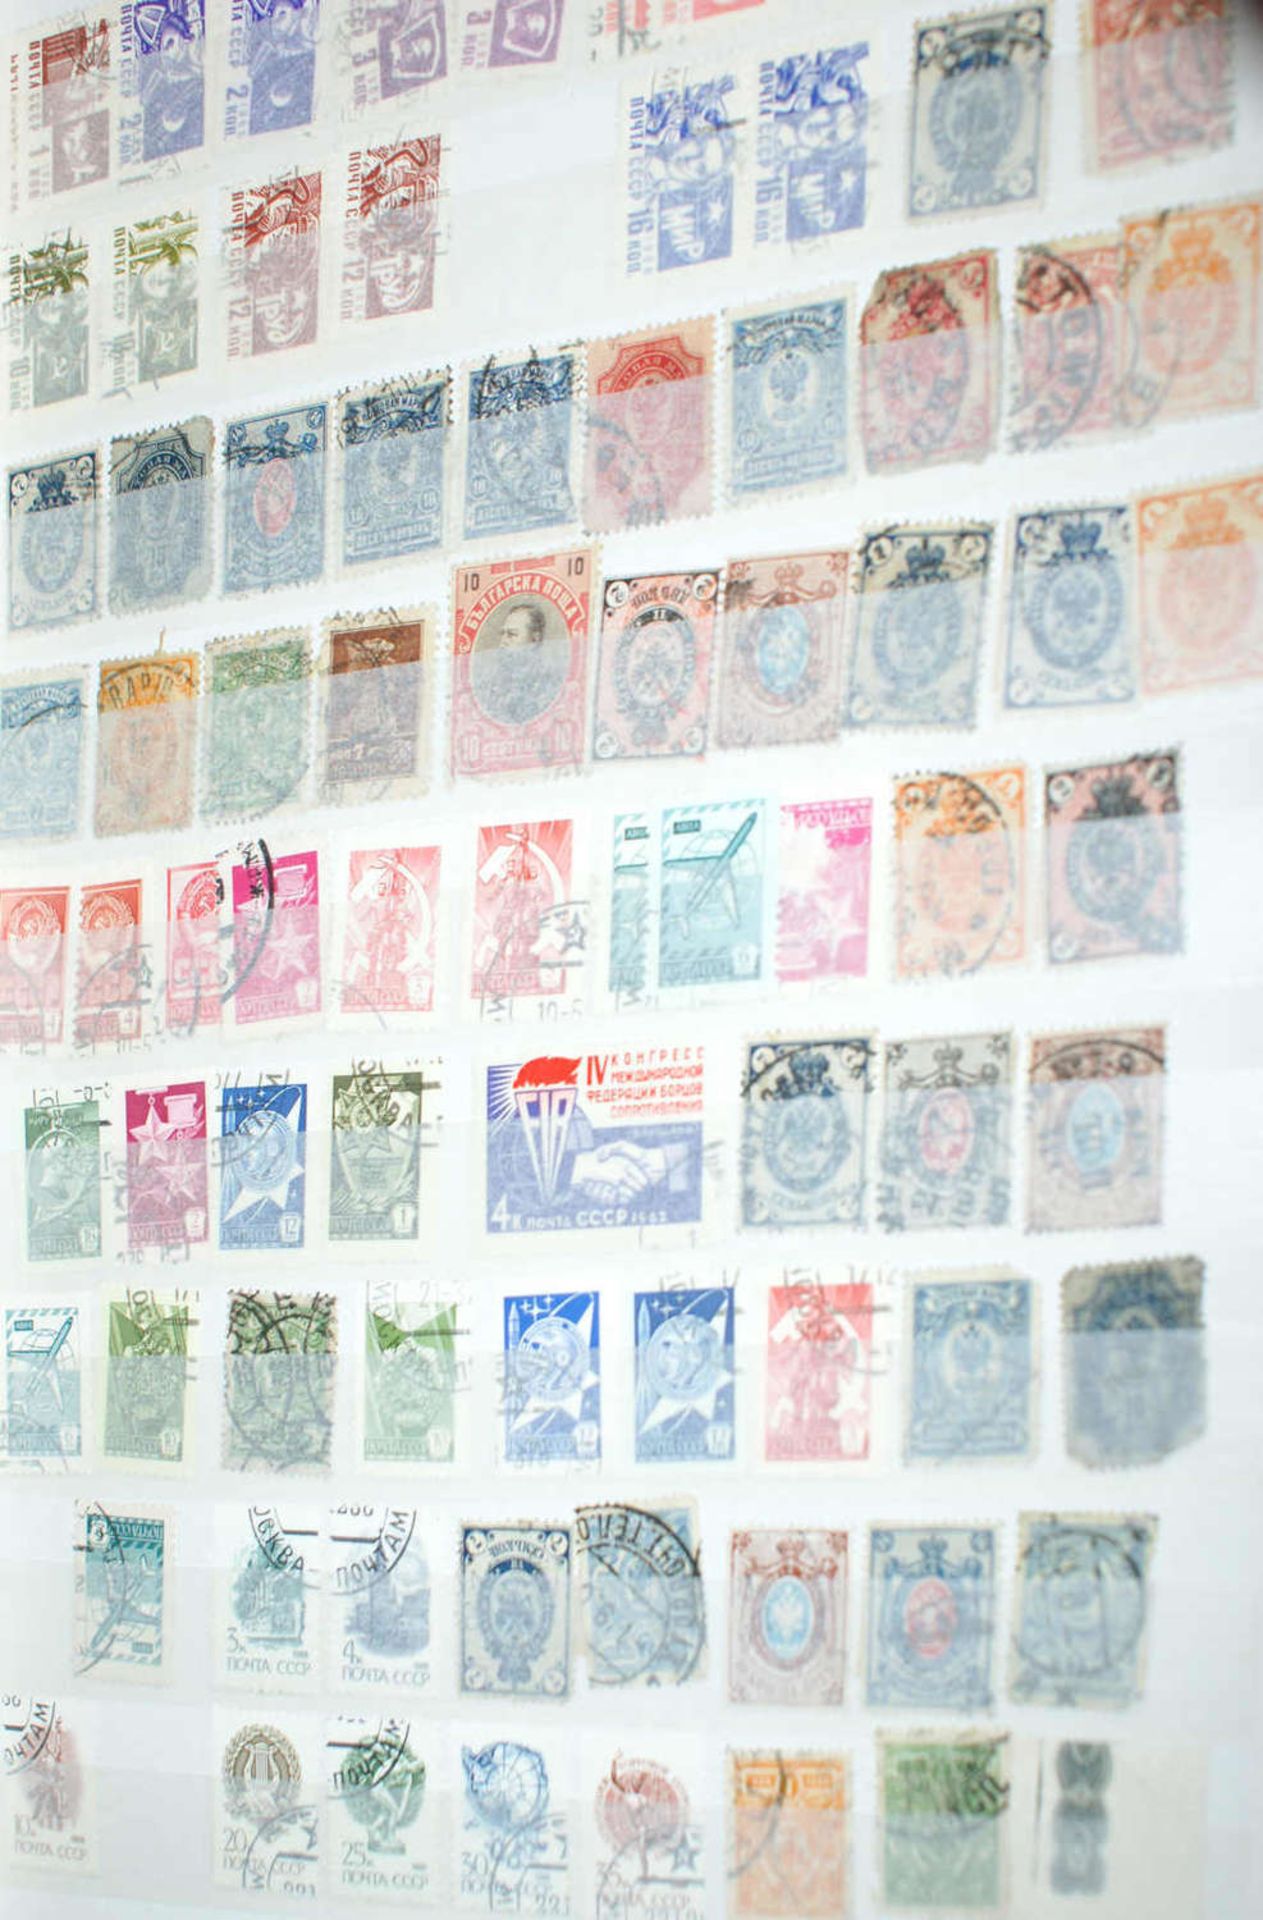 Europa - Briefmarken Dubletten Konvolut, bestehend aus 9 Alben, teilweise schlecht gelagert. - Image 5 of 5